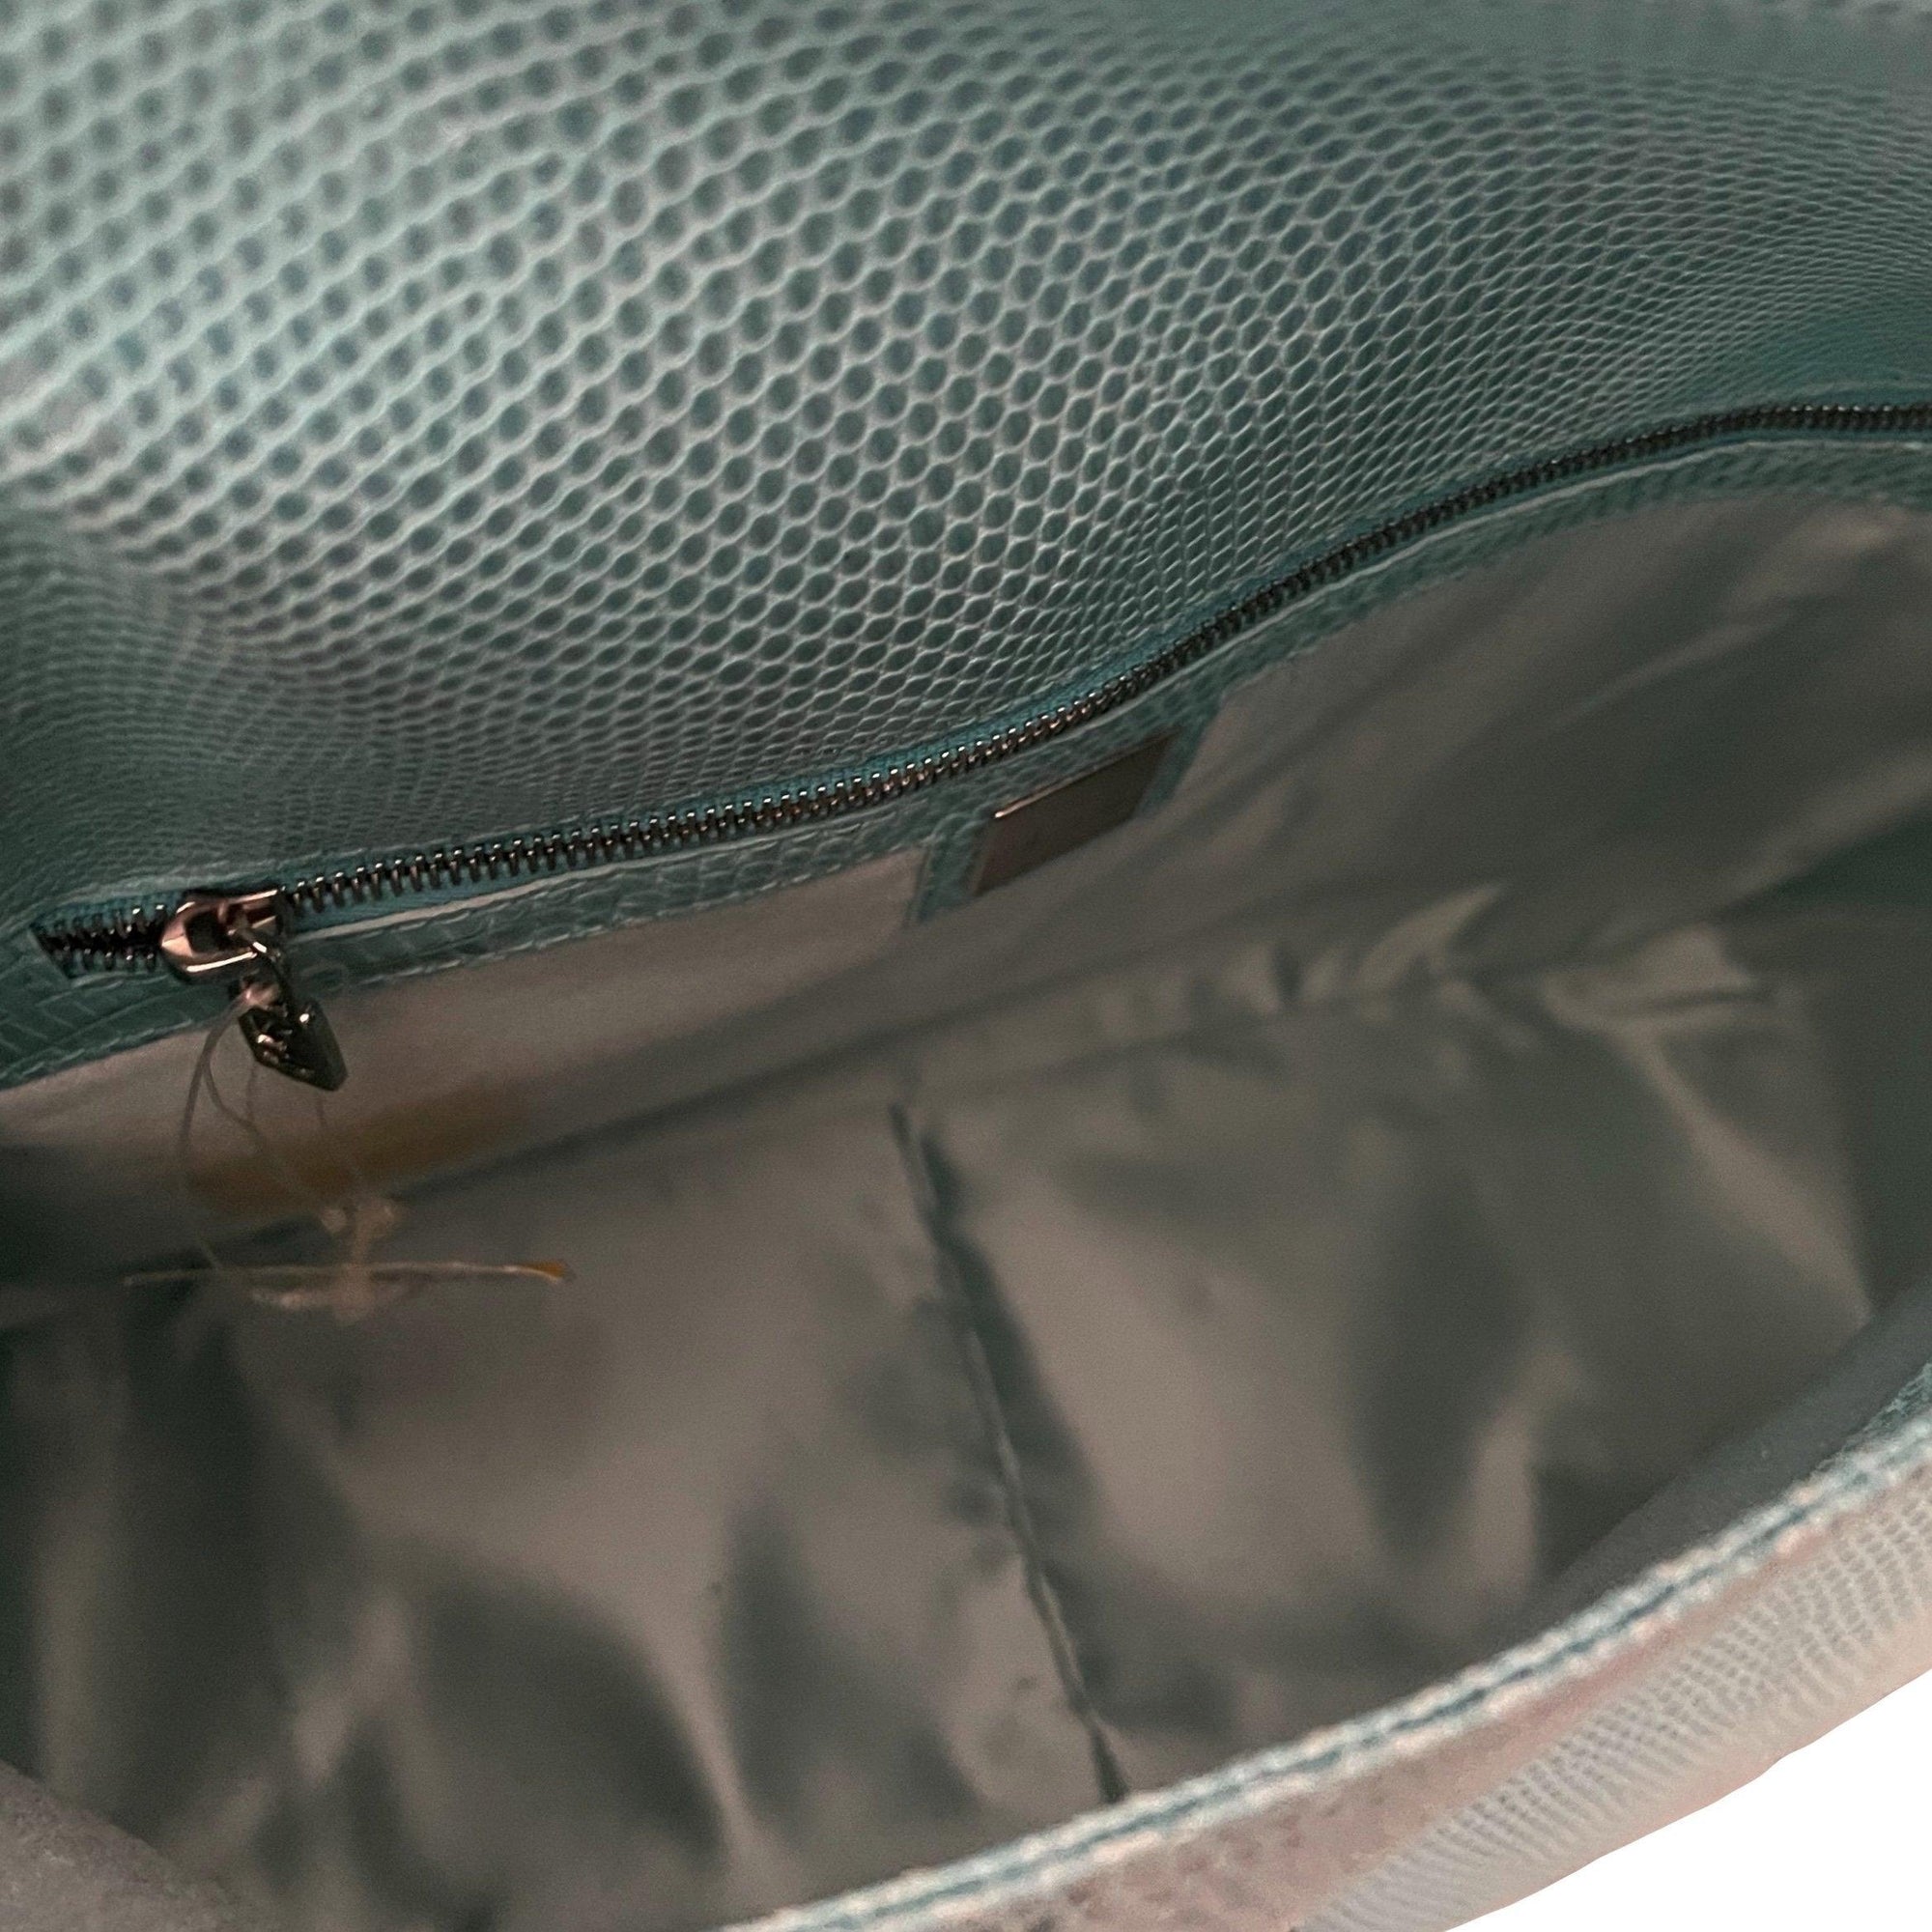 Fendi Turquoise Snake Emblem Shoulder Bag - Handbags